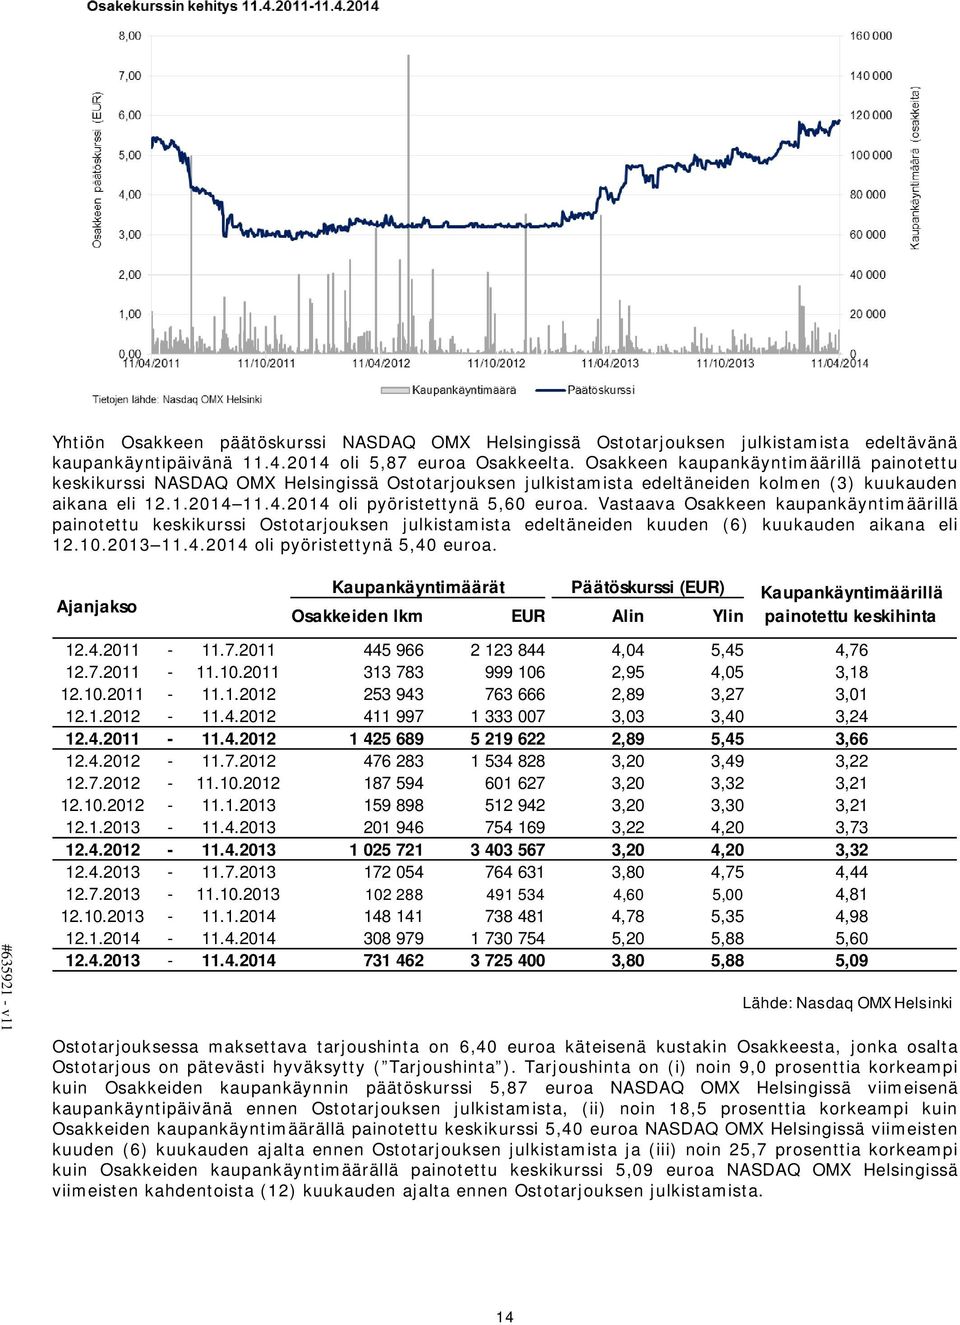 Vastaava Osakkeen kaupankäyntimäärillä painotettu keskikurssi Ostotarjouksen julkistamista edeltäneiden kuuden (6) kuukauden aikana eli 12.10.2013 11.4.2014 oli pyöristettynä 5,40 euroa.